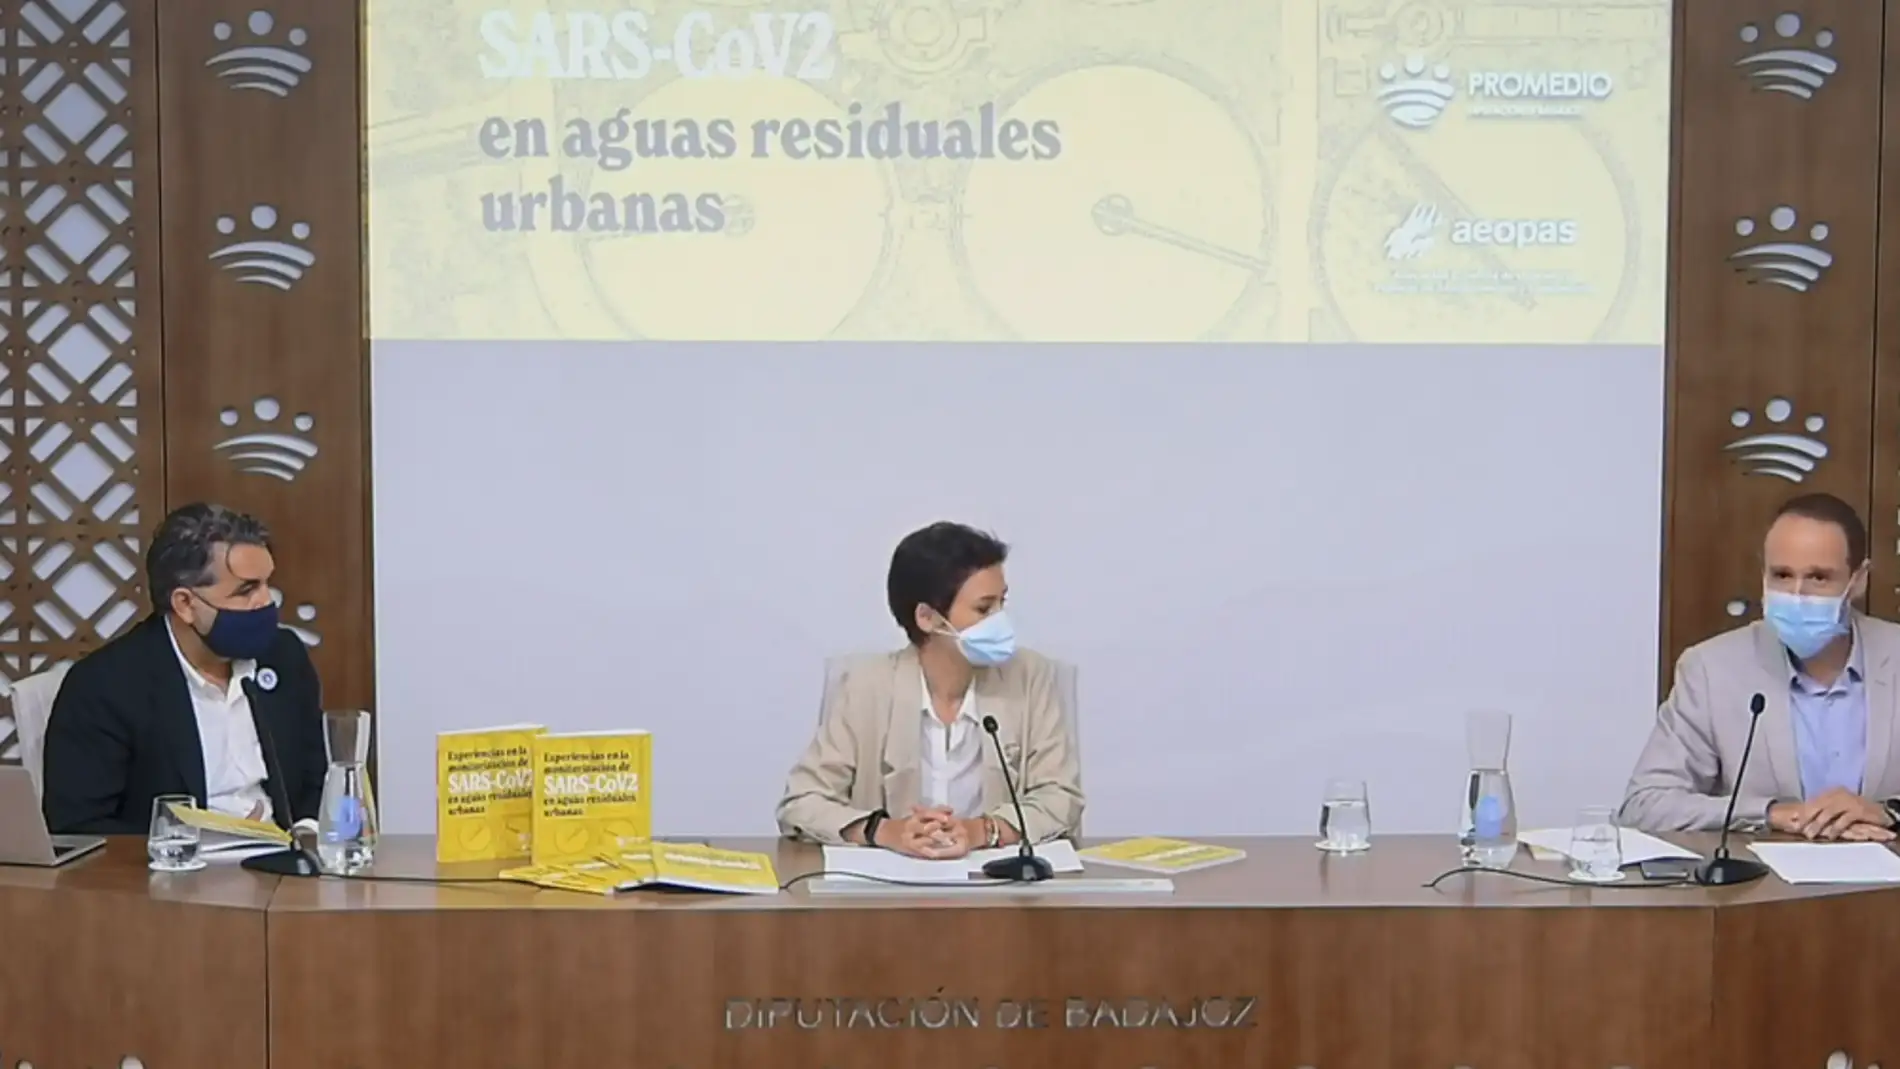 La Diputación de Badajoz participa en un estudio de aguas residuales que anticipa el conocimiento de casos de coronavirus y sus posibles variantes